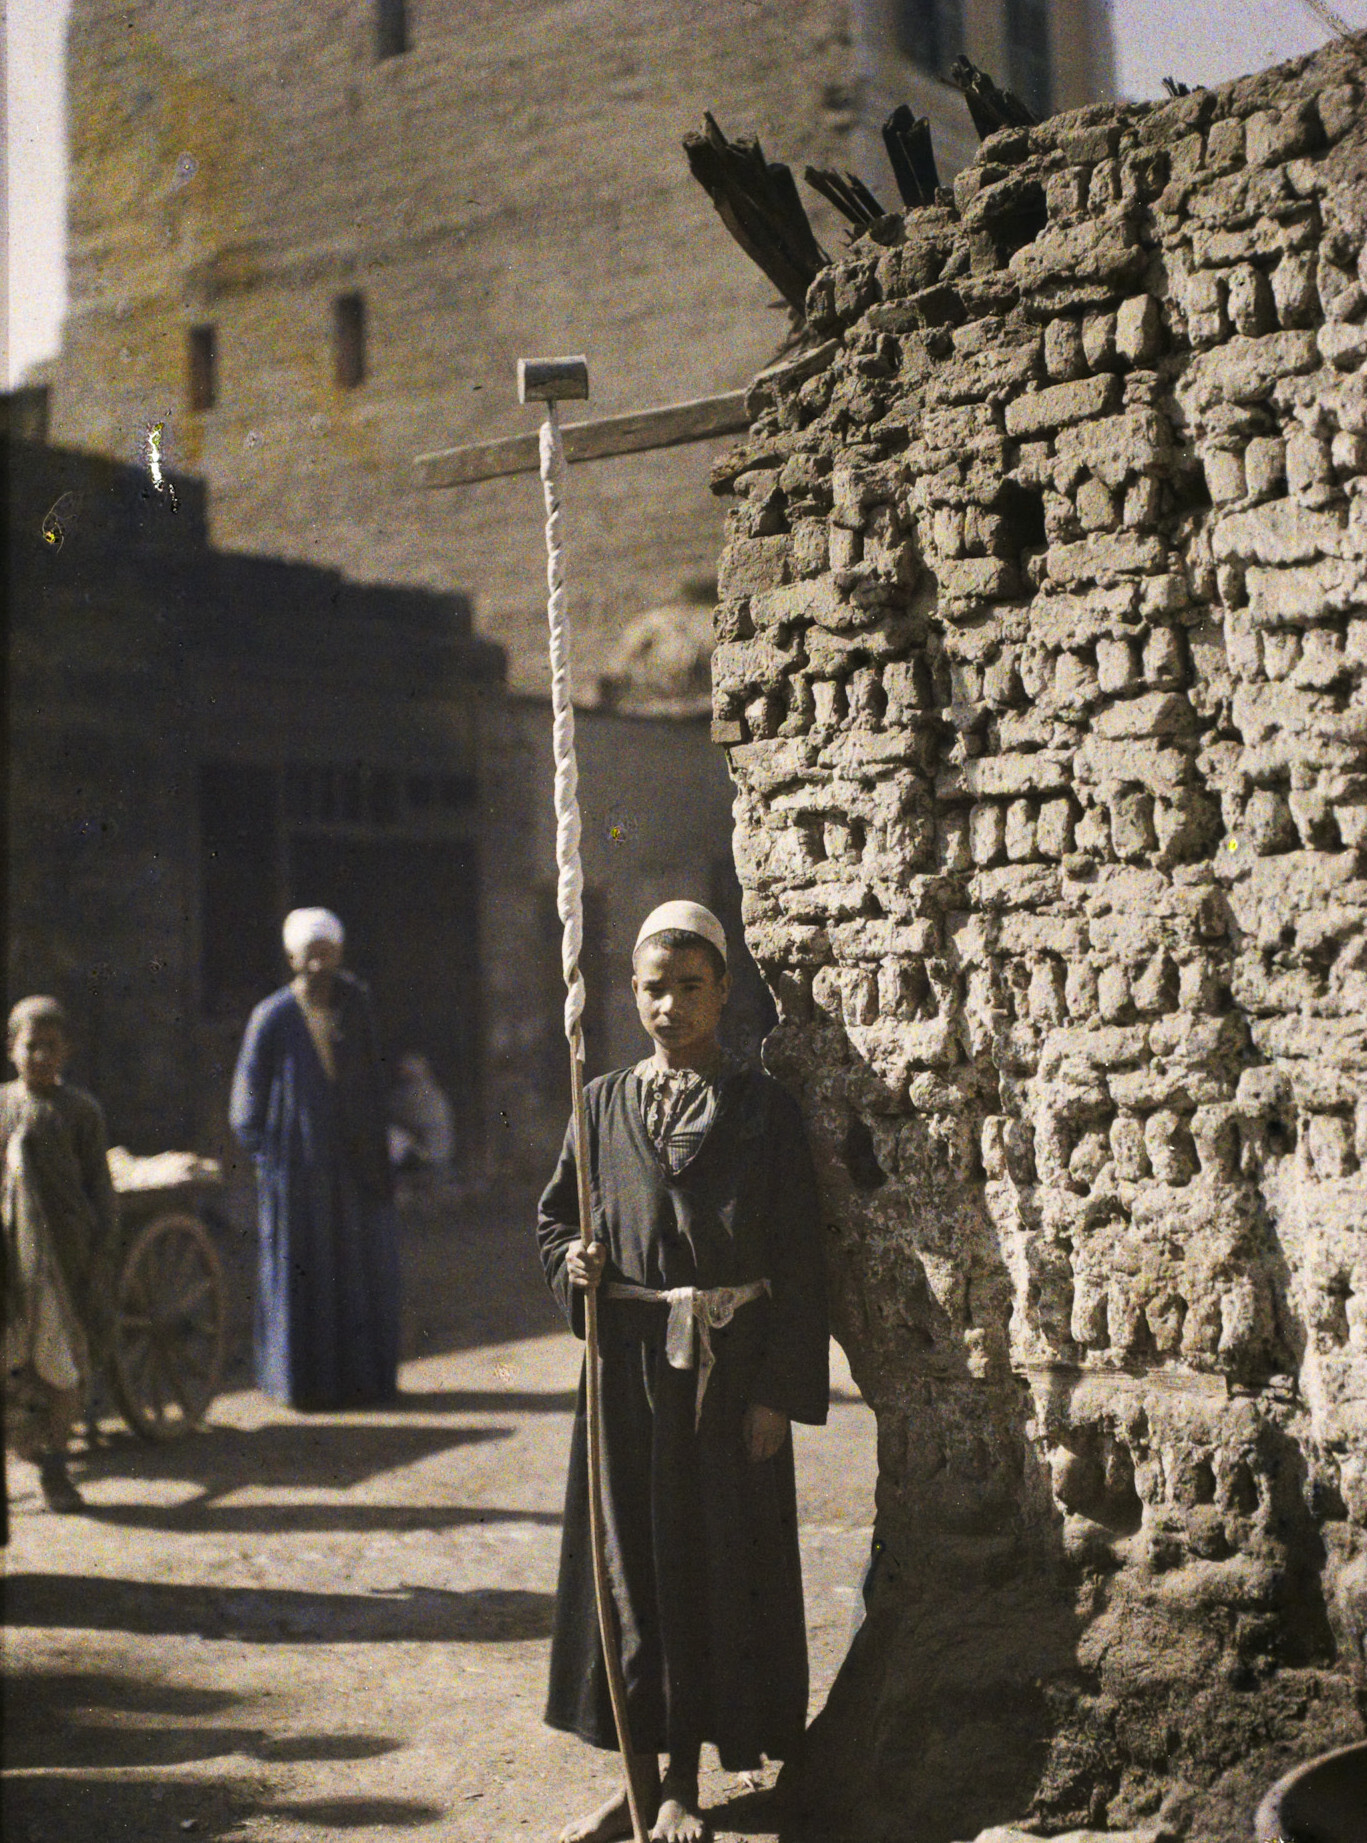 Аль-Минья, Египет. Уличный продавец нуги, 1914 год, автор Огюст Леон (автохром)